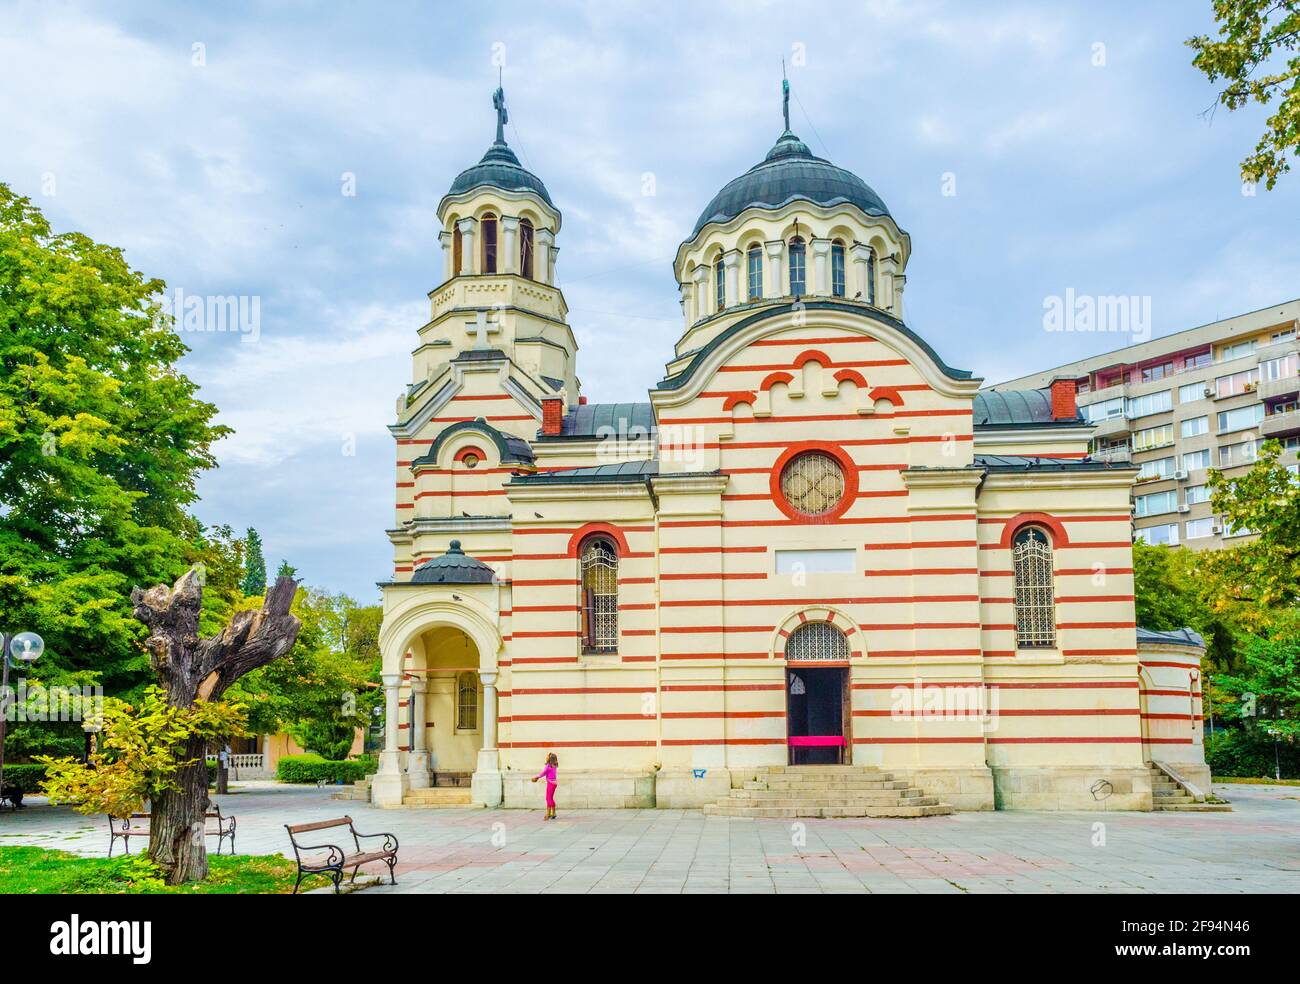 Une église dans la ville bulgare de Varna Banque D'Images